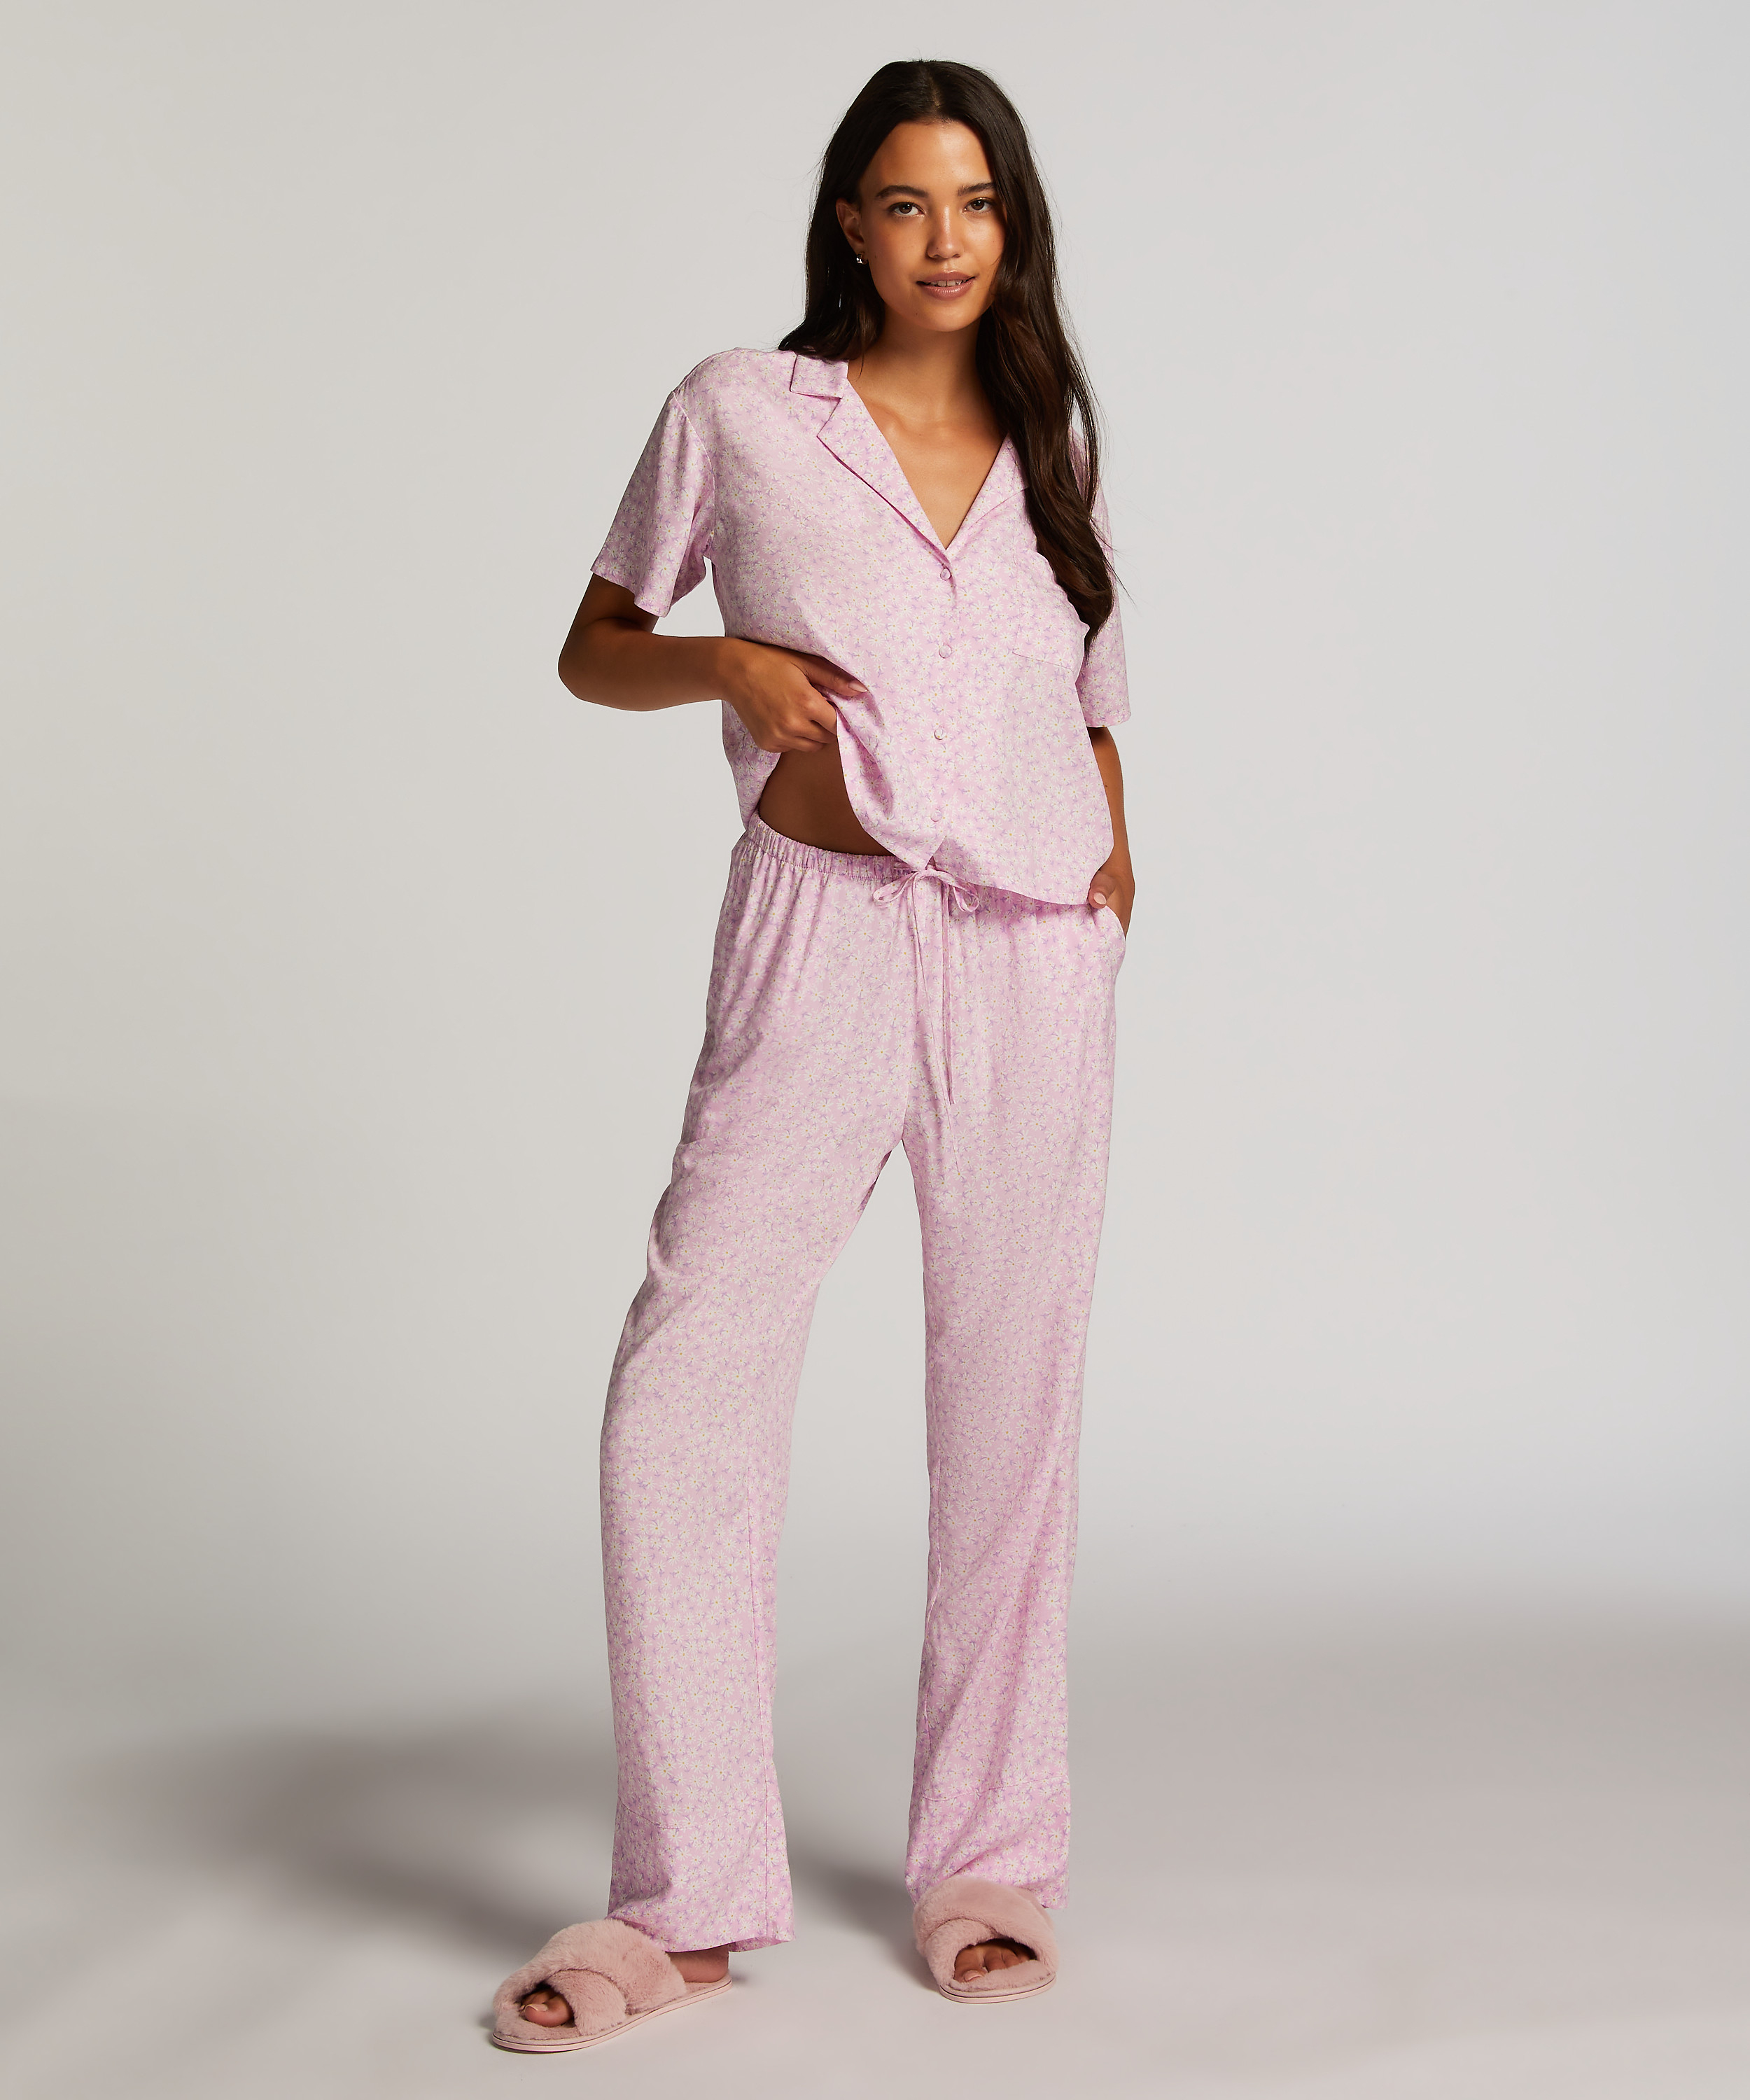 Springbreakers Pyjama Top, Pink, main